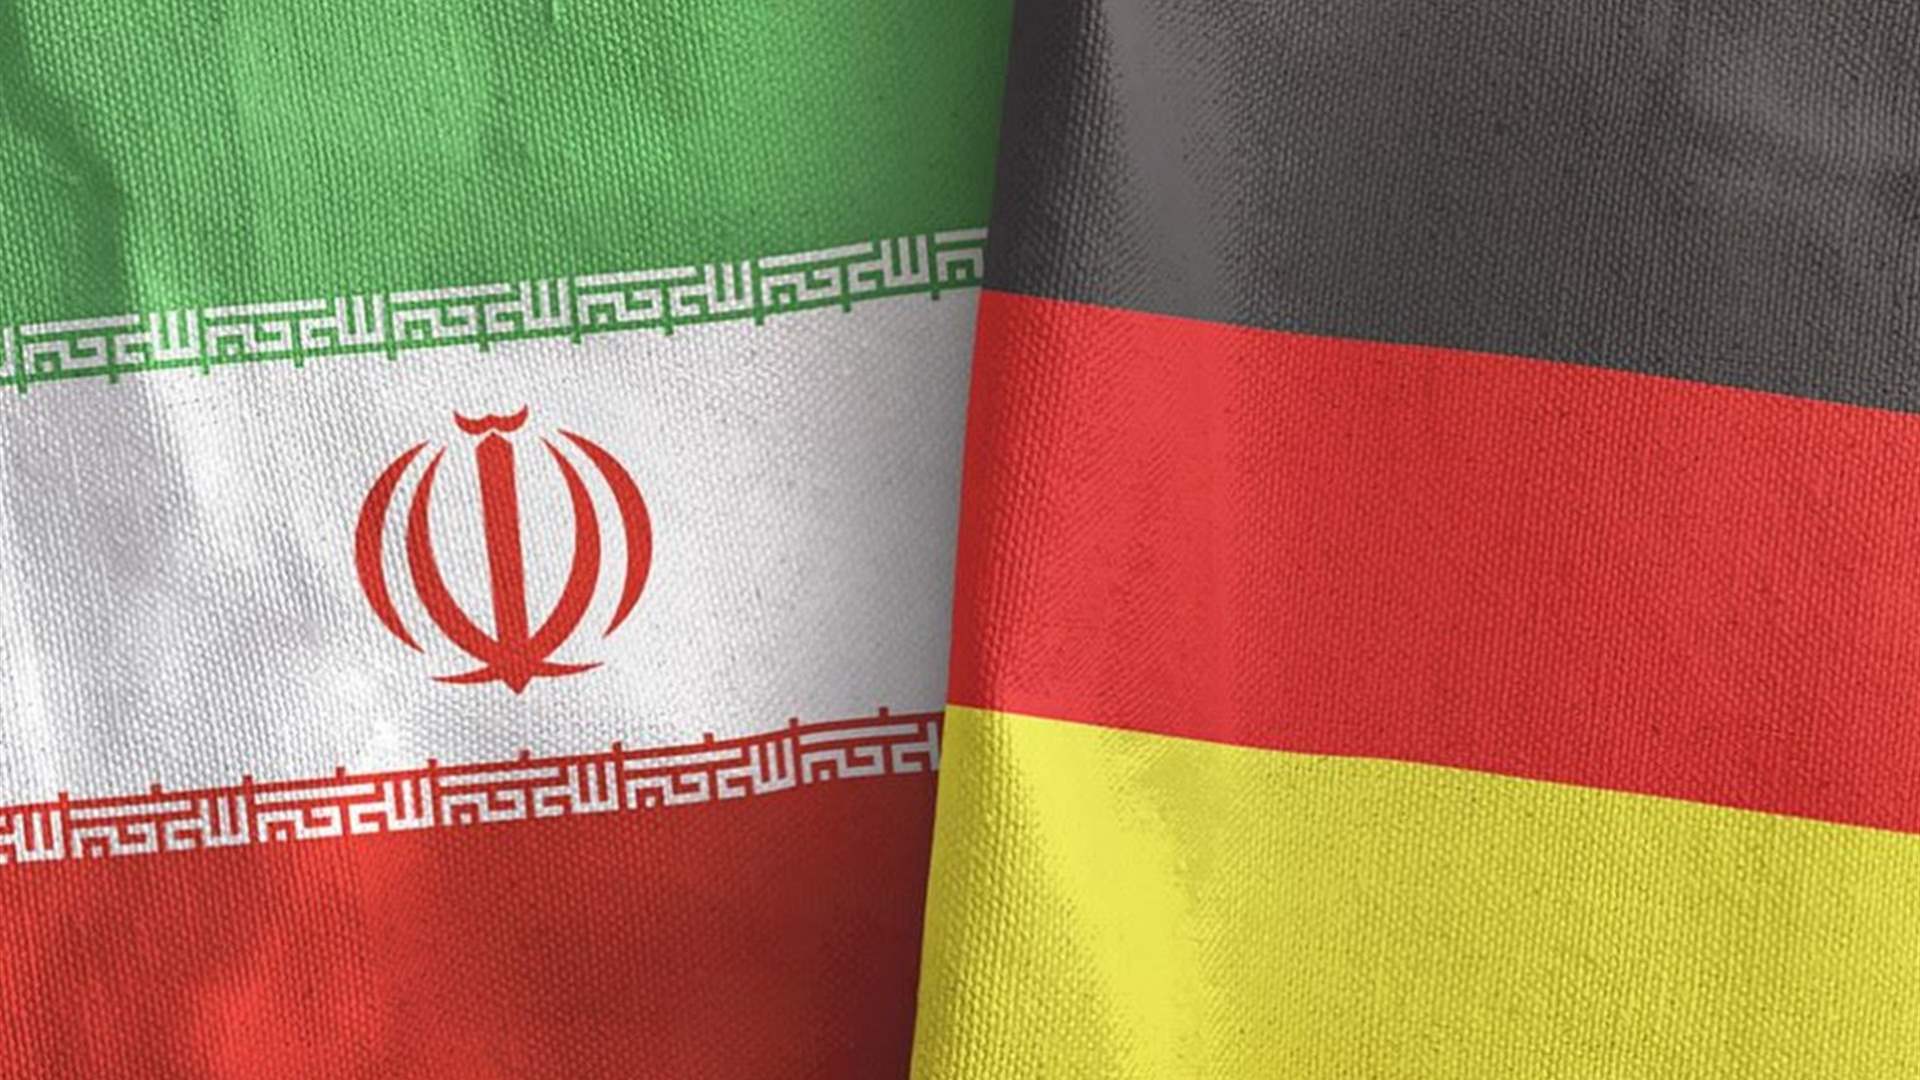 المانيا تعلن طرد دبلوماسيين إيرانيين اثنين 